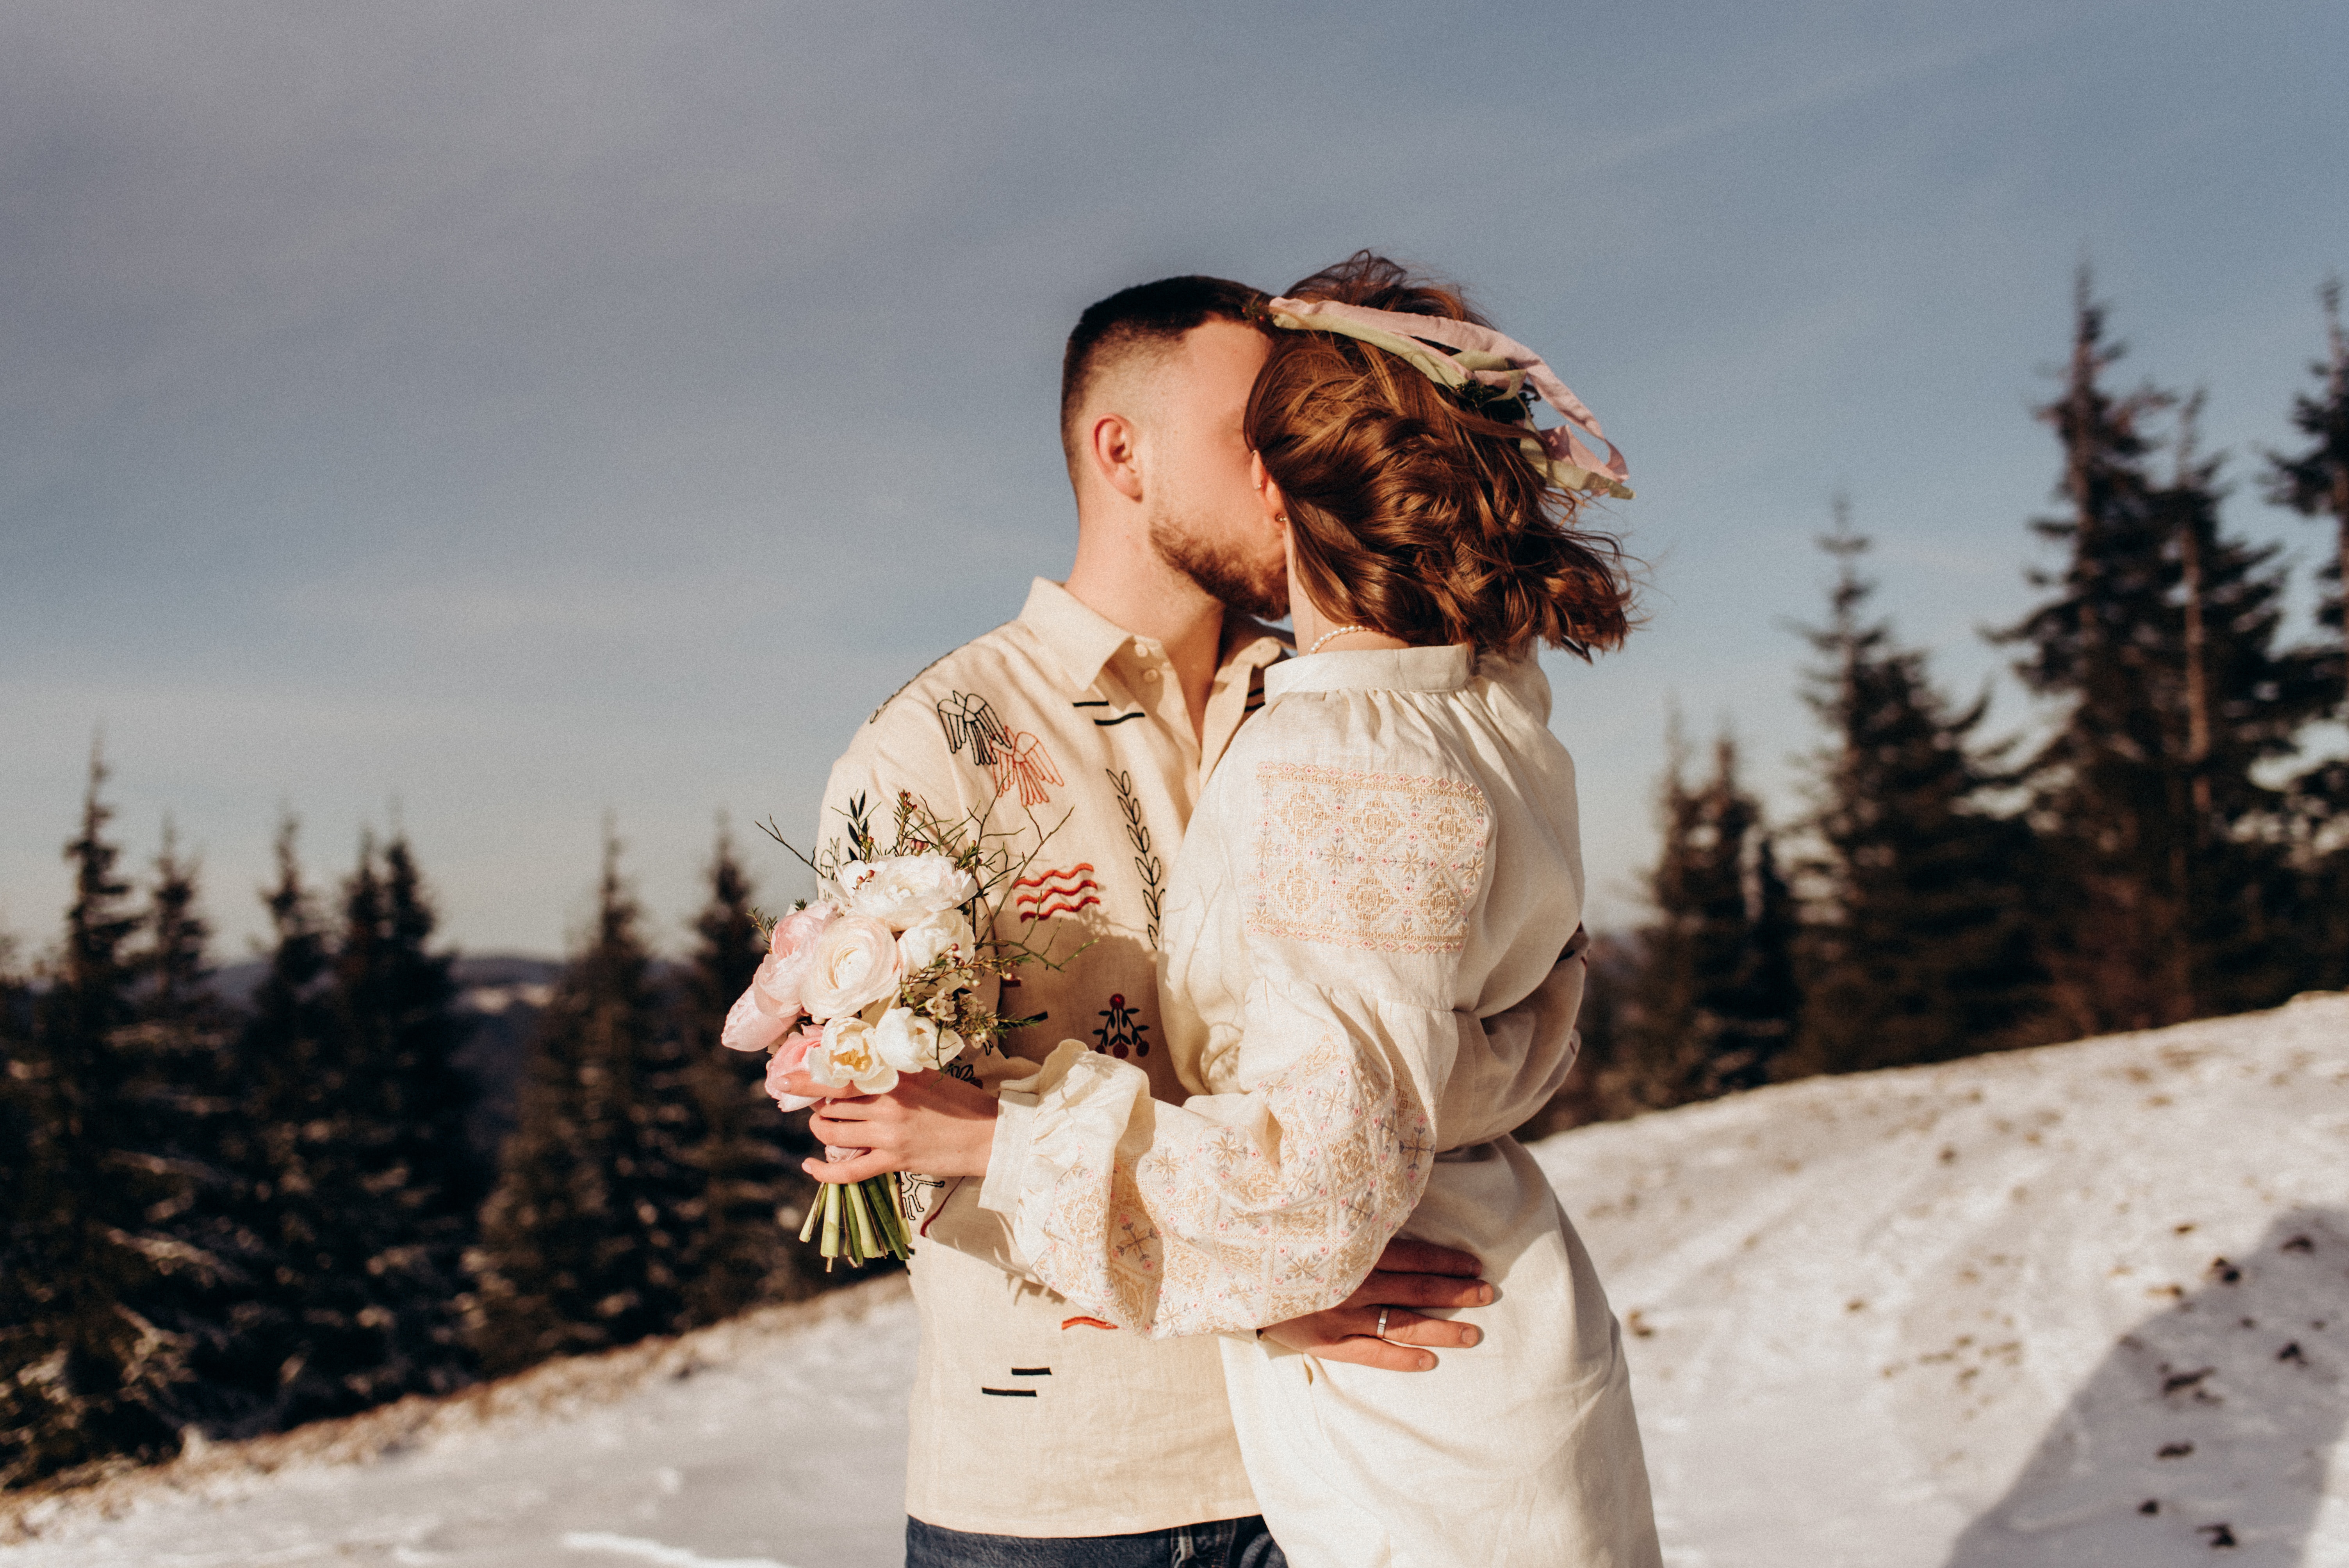 Un couple de jeunes mariés s'embrassant dans la neige. La mariée porte une robe à manches longues et tient un bouquet de fleurs dans une main, le marié porte une chemise.